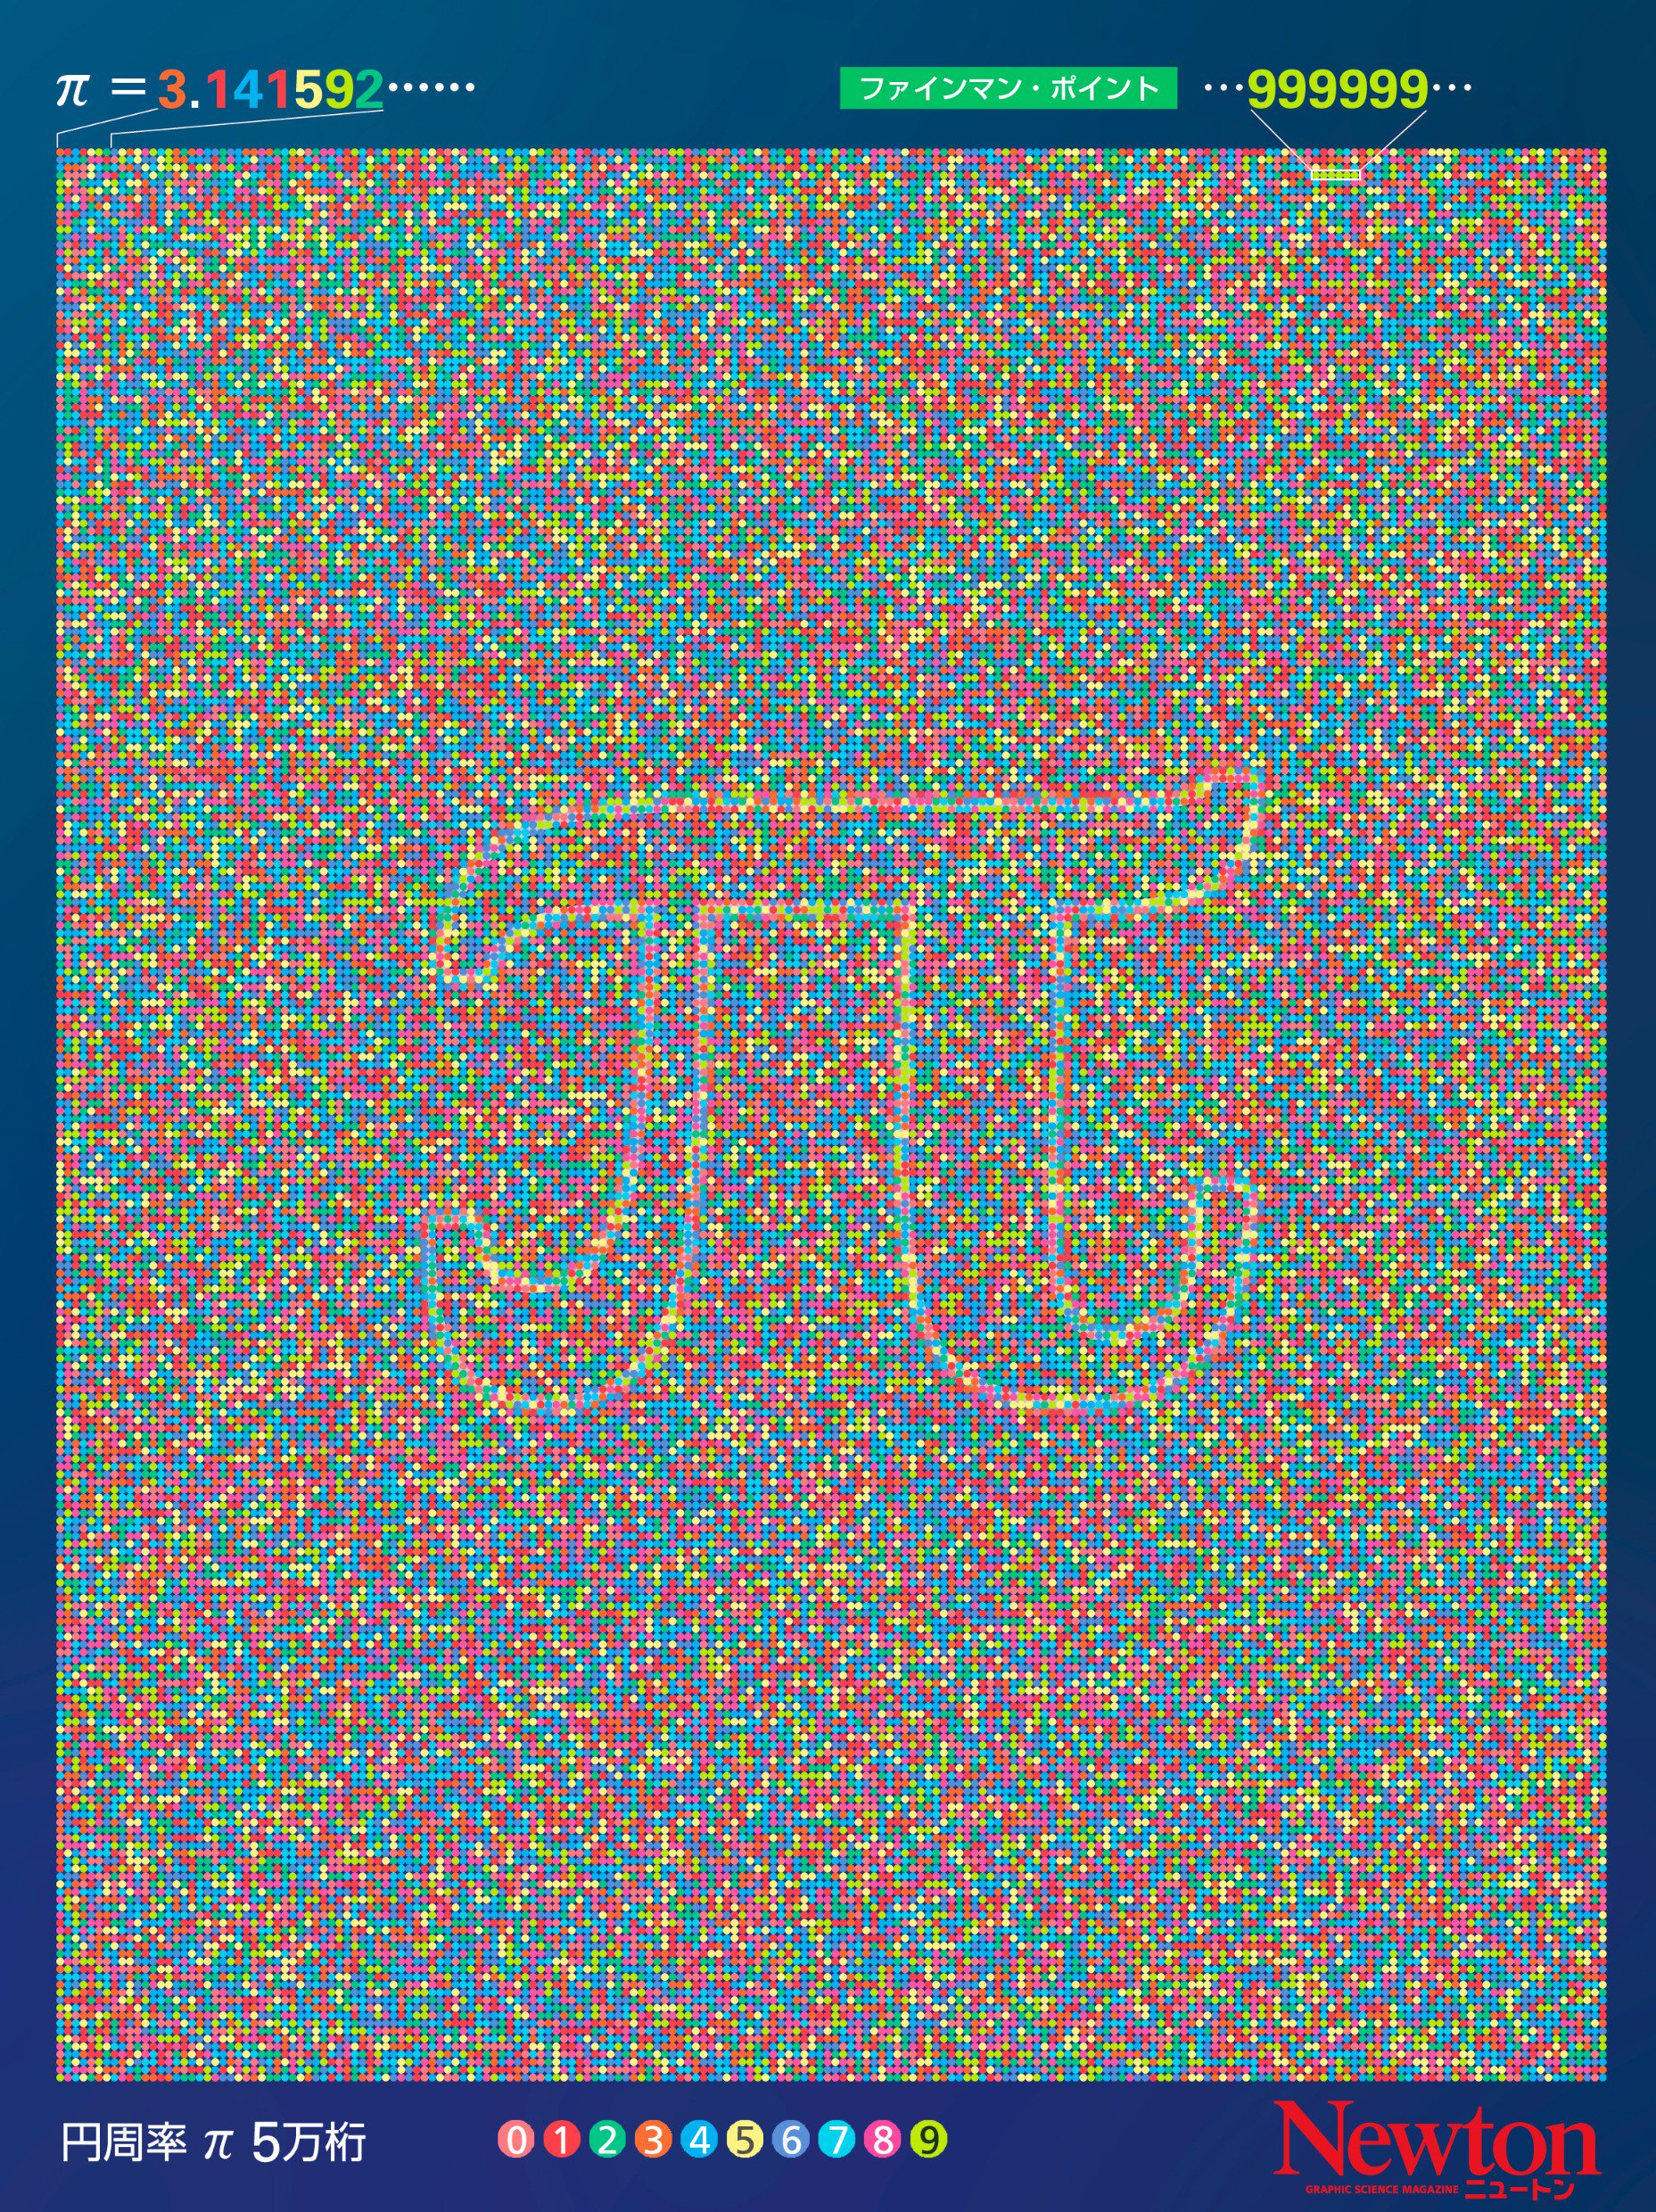 科学雑誌newton ニュートン 公式 On Twitter 円周率 P 3 141592 に並ぶ数字を色分けすると Newton最新号 2018年9月号 の特集 ランダムと乱数の奇妙な世界 に掲載しているこのイラストは 円周率 P 3 141592 5万桁の0から9までの数字を色分けしたもの